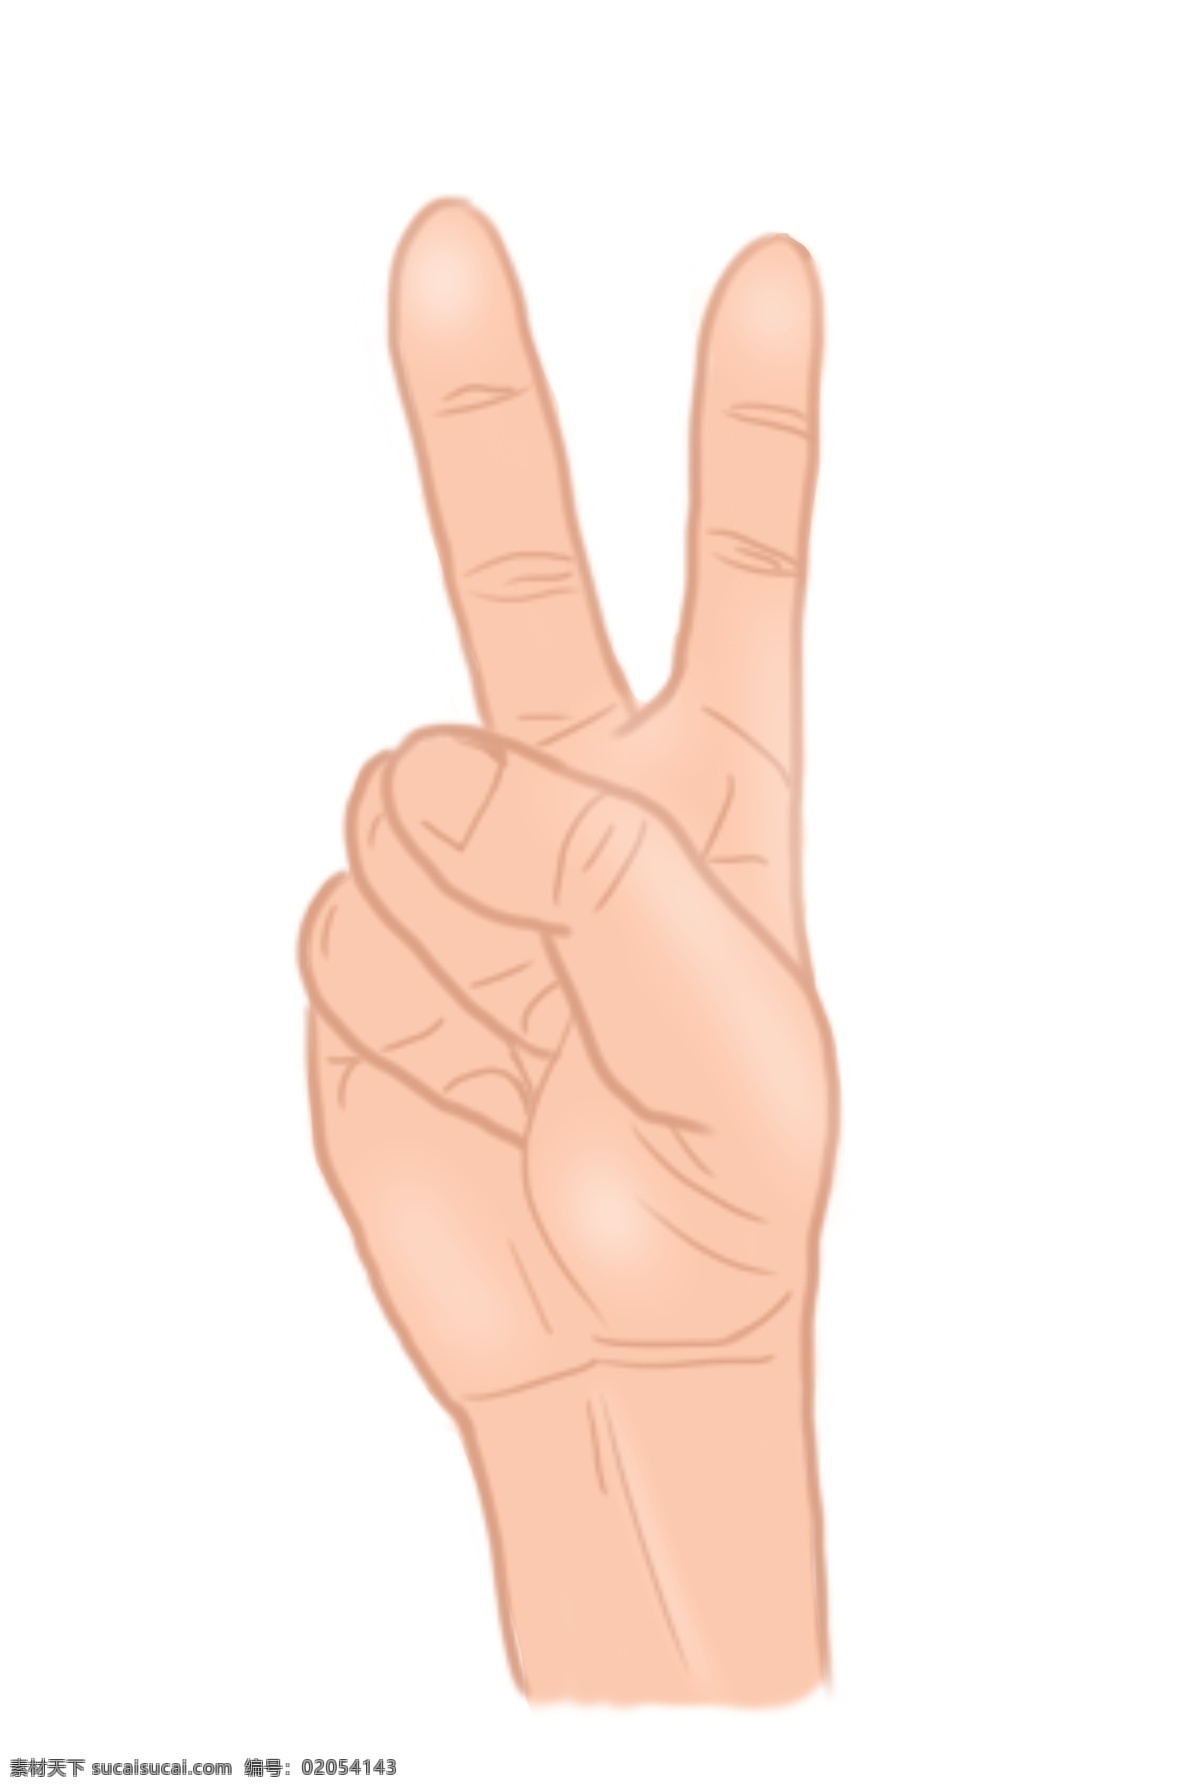 成功 手势 卡通 插画 成功的手势 卡通插画 摆姿势 手势插画 肢体语言 手语的插画 数字2的手势